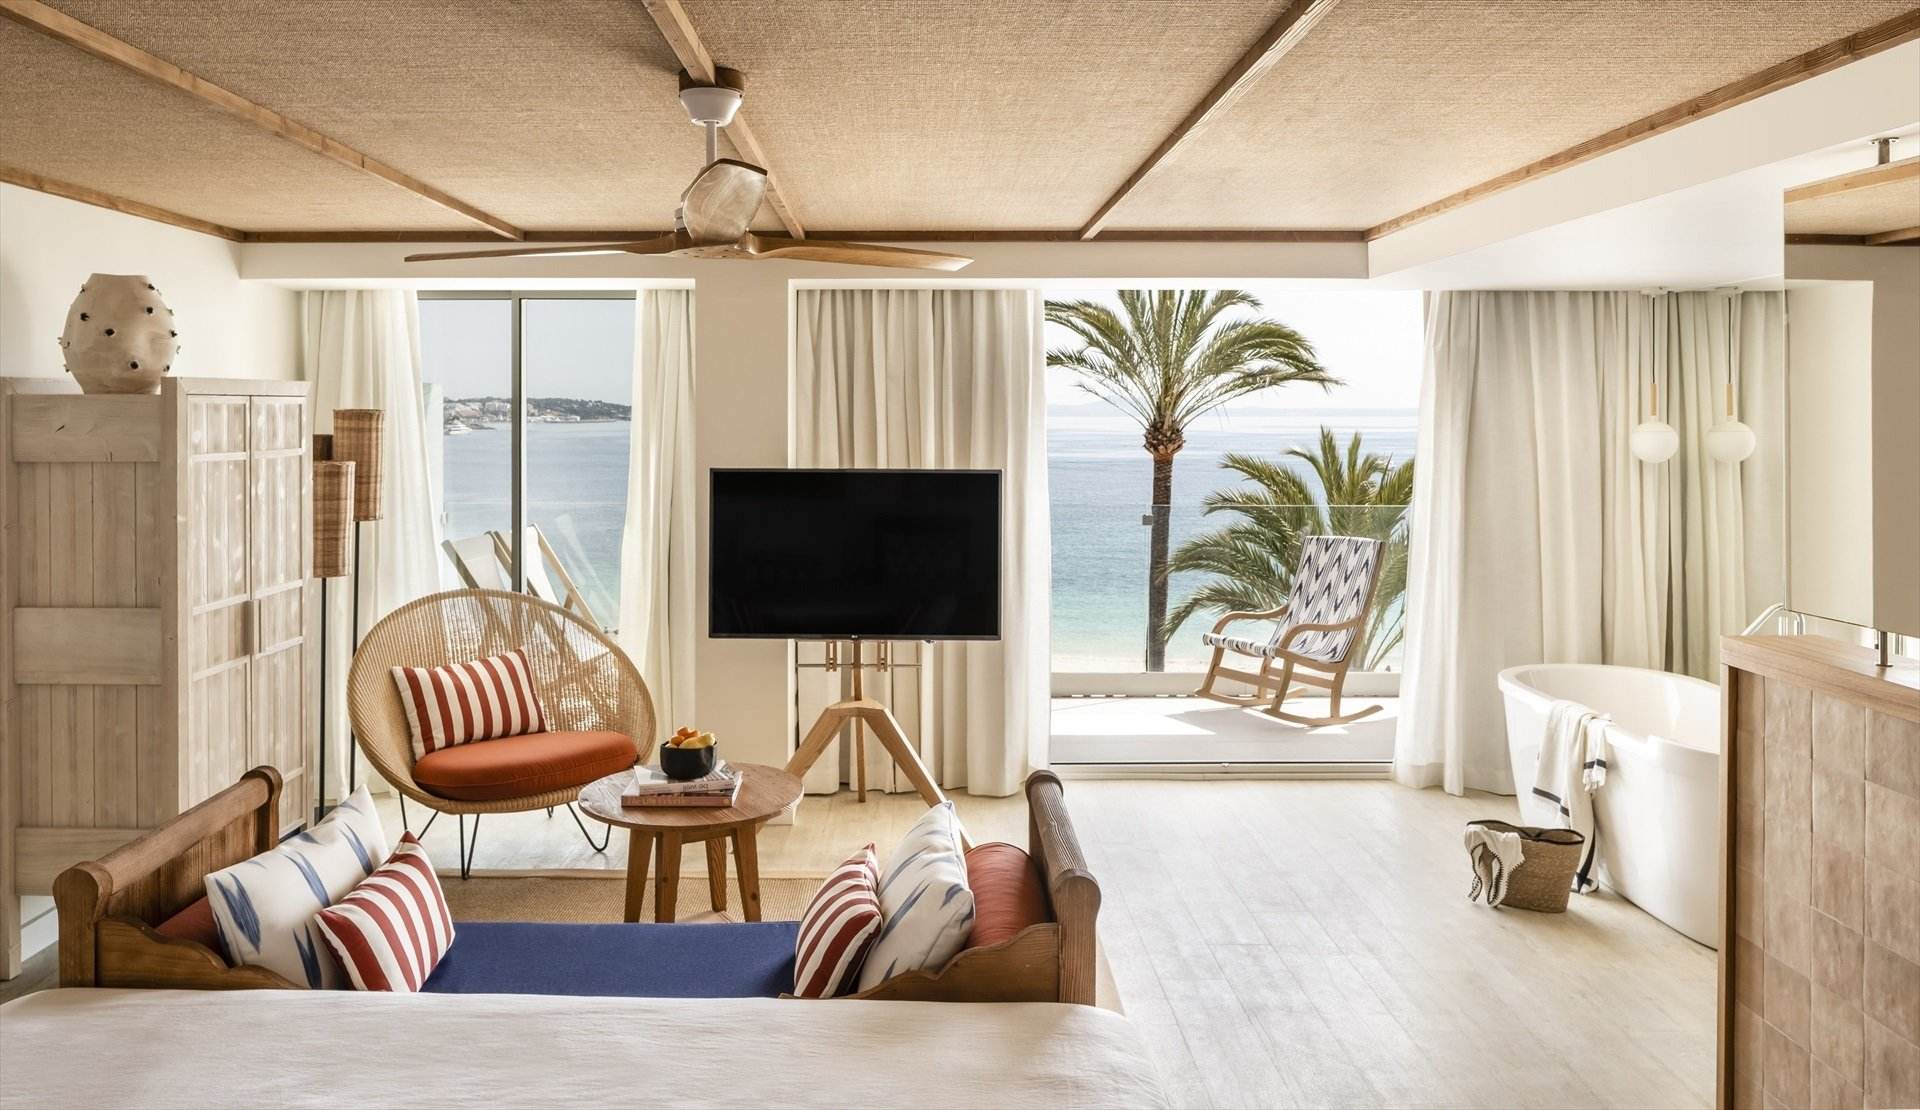 Millor que abans de la pandèmia i amb més luxe: així és el gran estiu de les hoteleres espanyoles